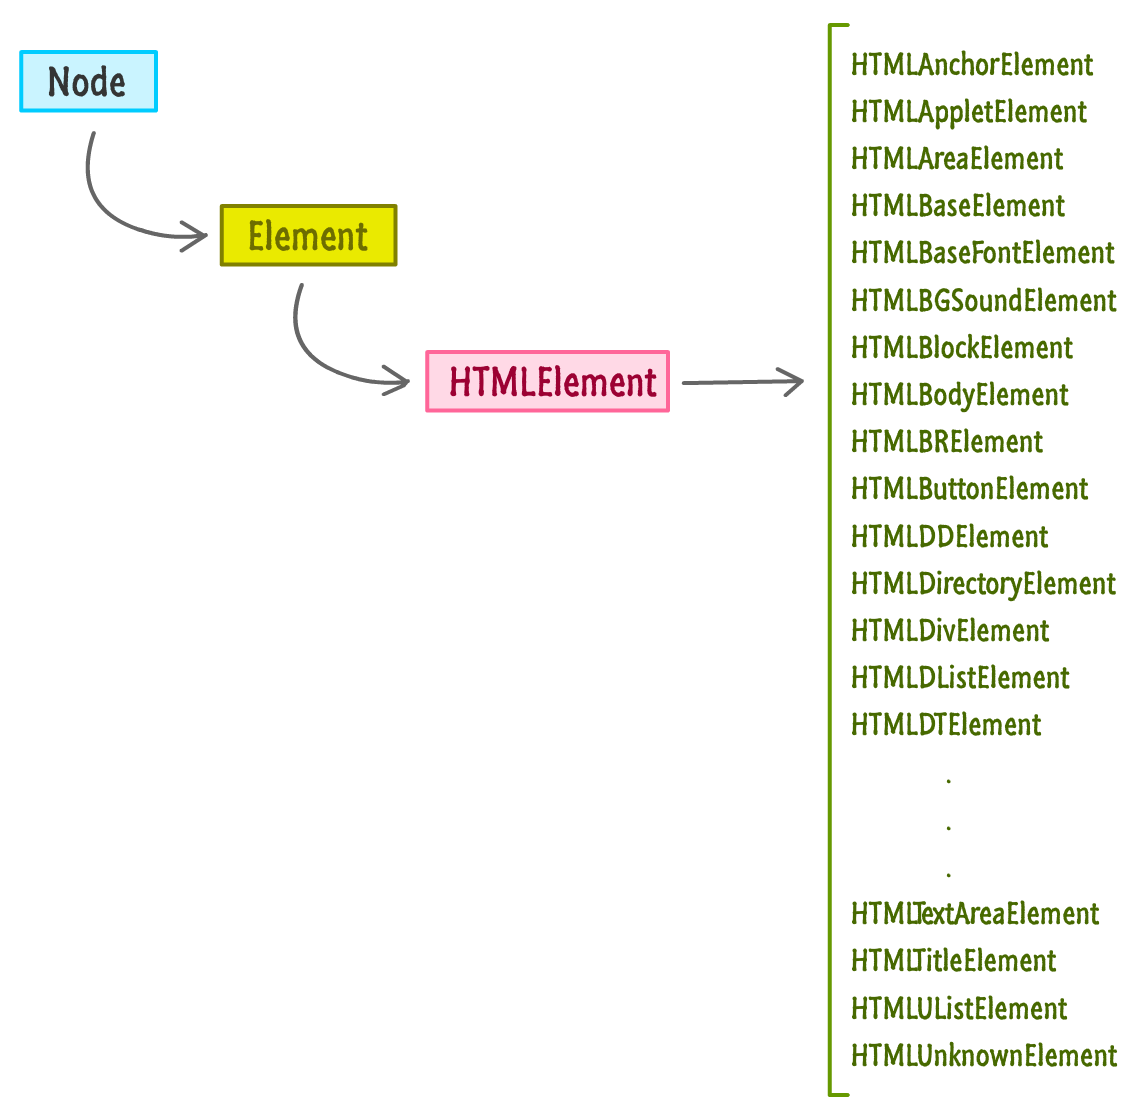 the node hierarchy